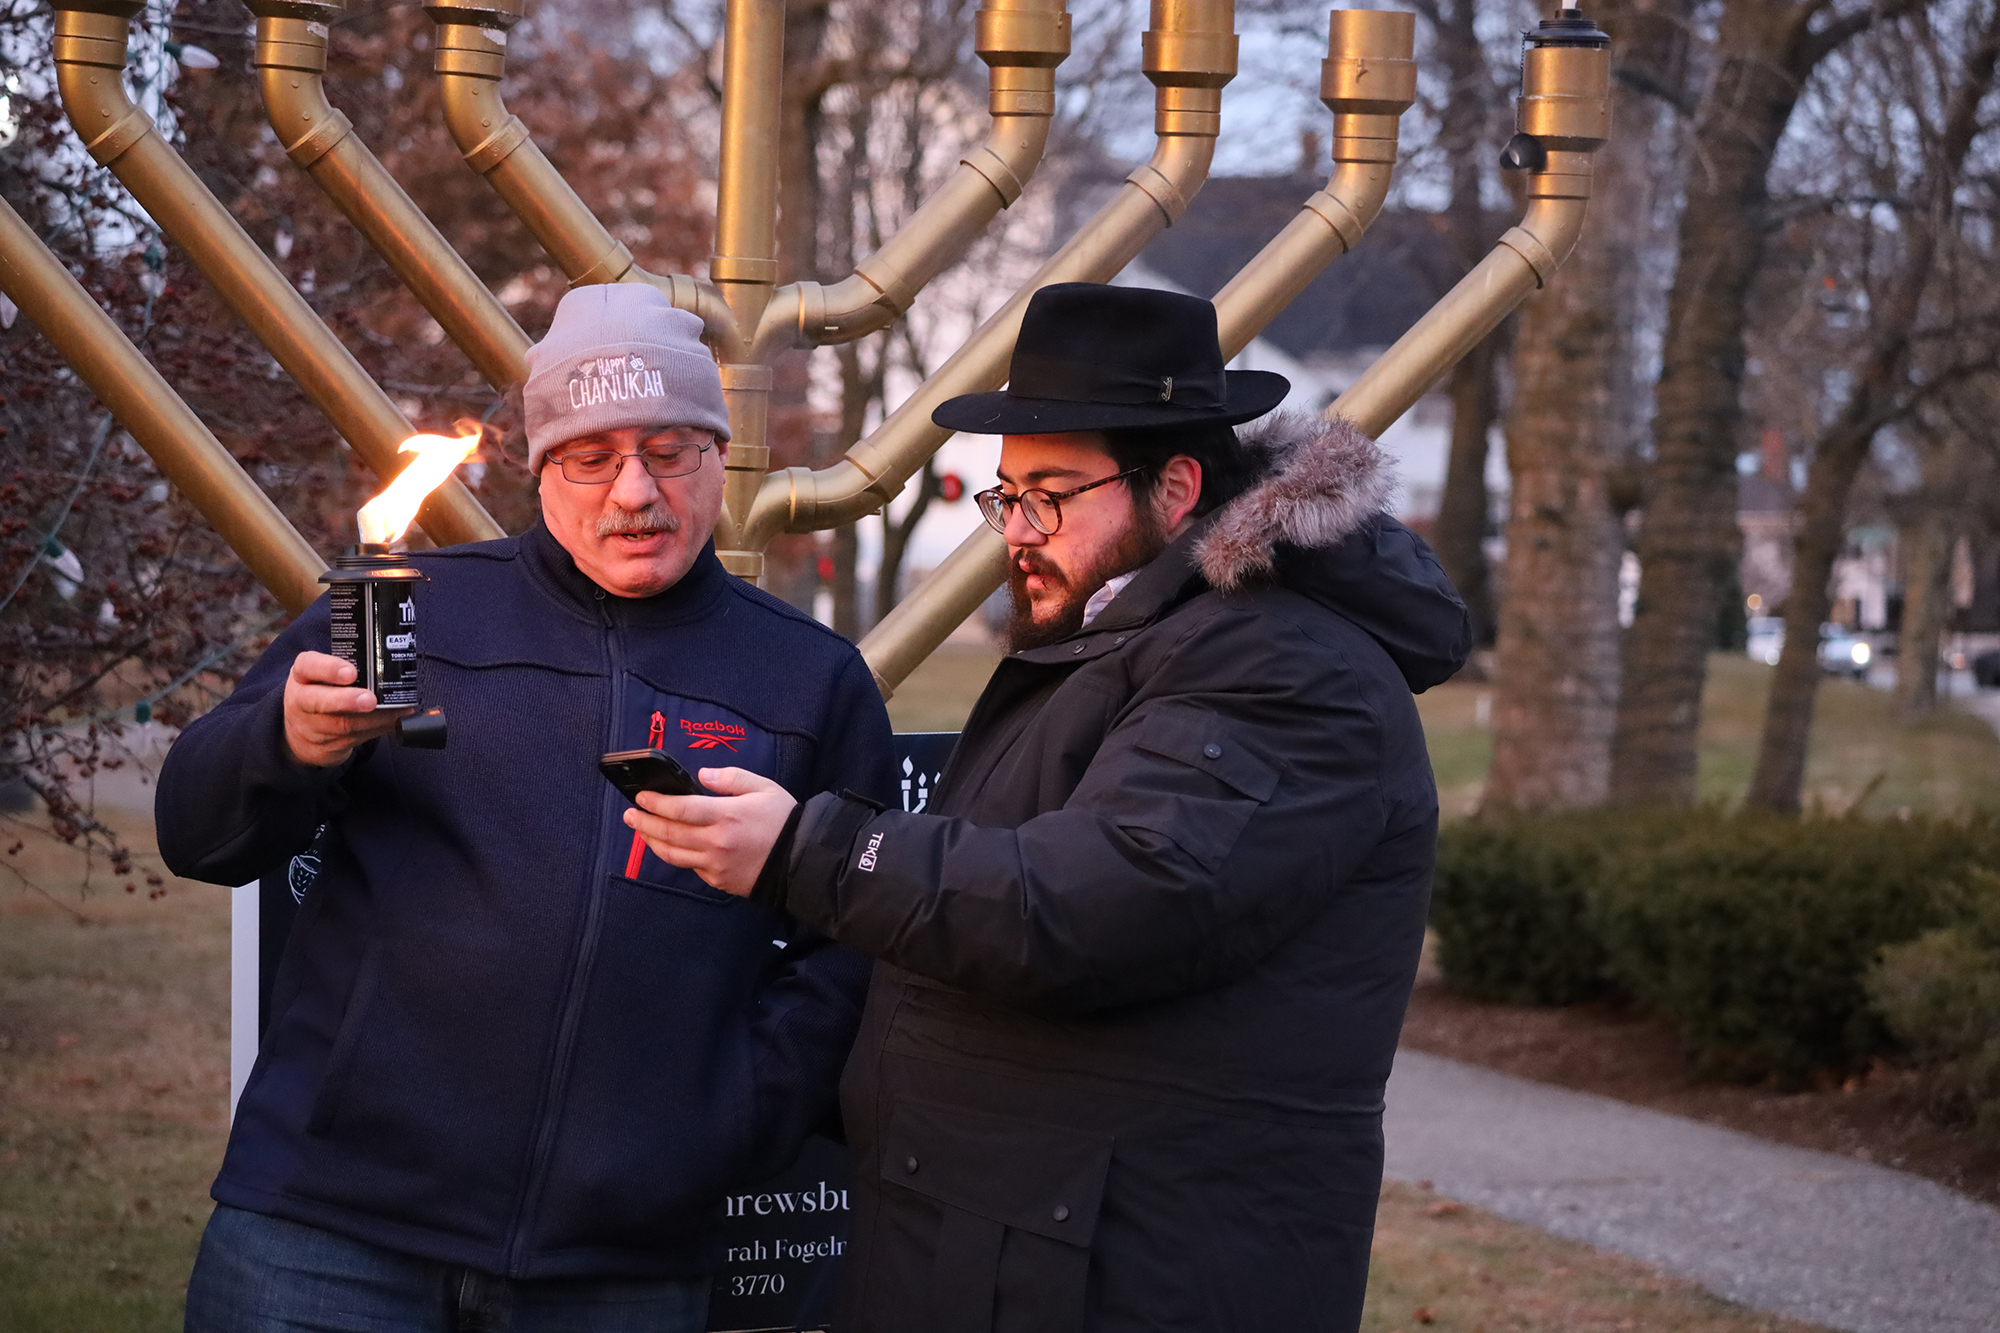 Shrewsbury lights menorah, celebrates Hanukkah